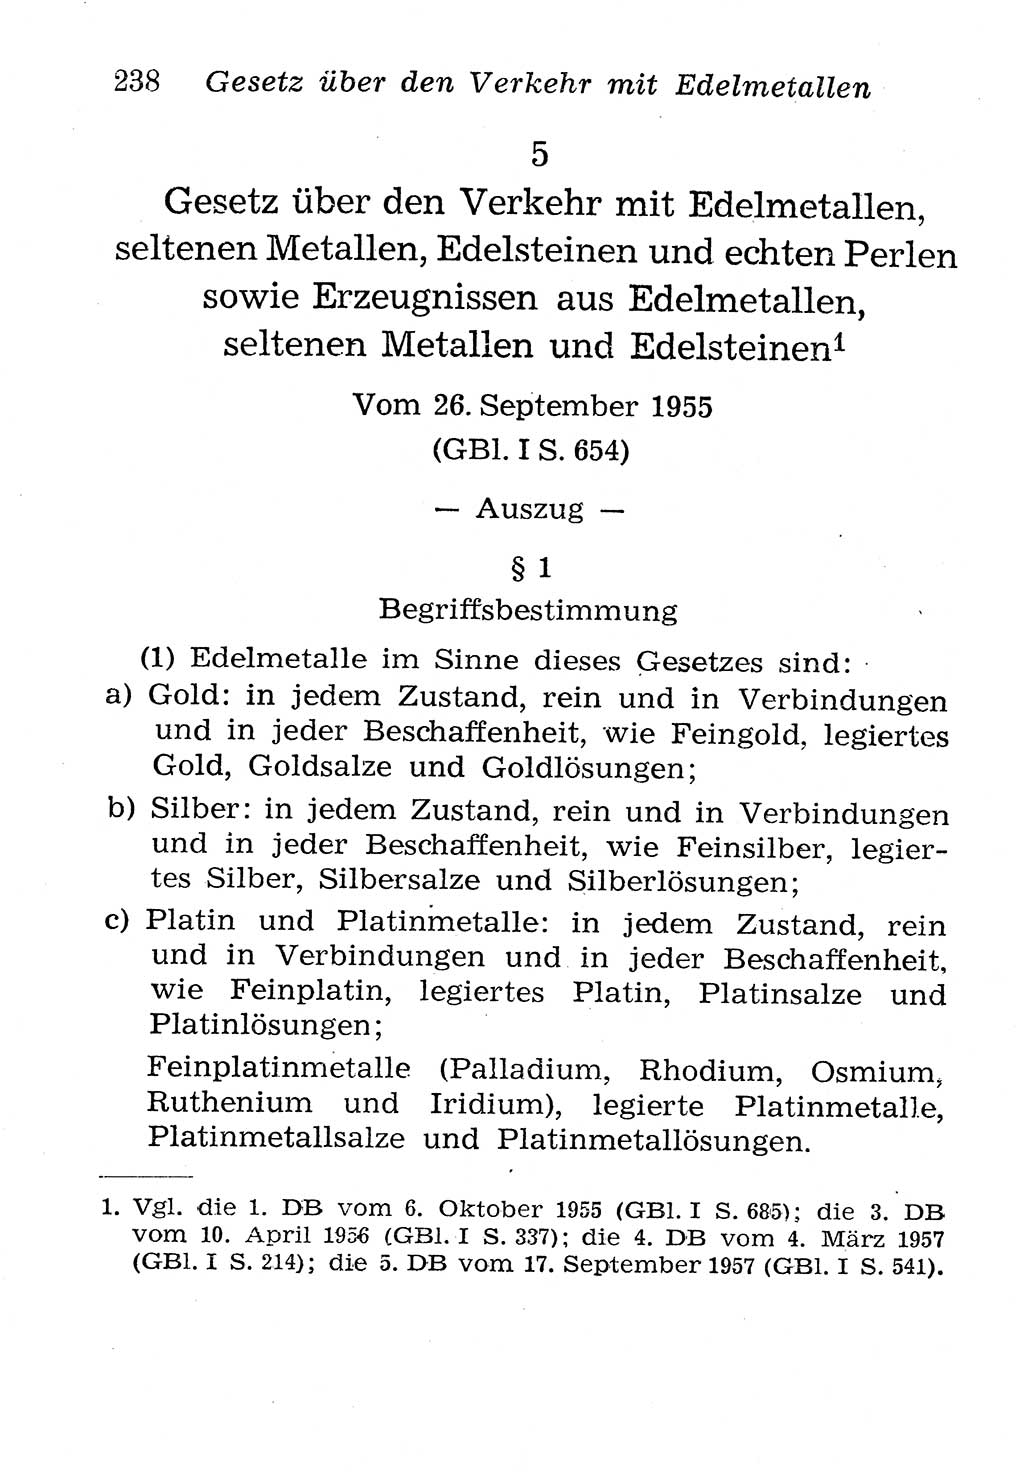 Strafgesetzbuch (StGB) und andere Strafgesetze [Deutsche Demokratische Republik (DDR)] 1958, Seite 238 (StGB Strafges. DDR 1958, S. 238)